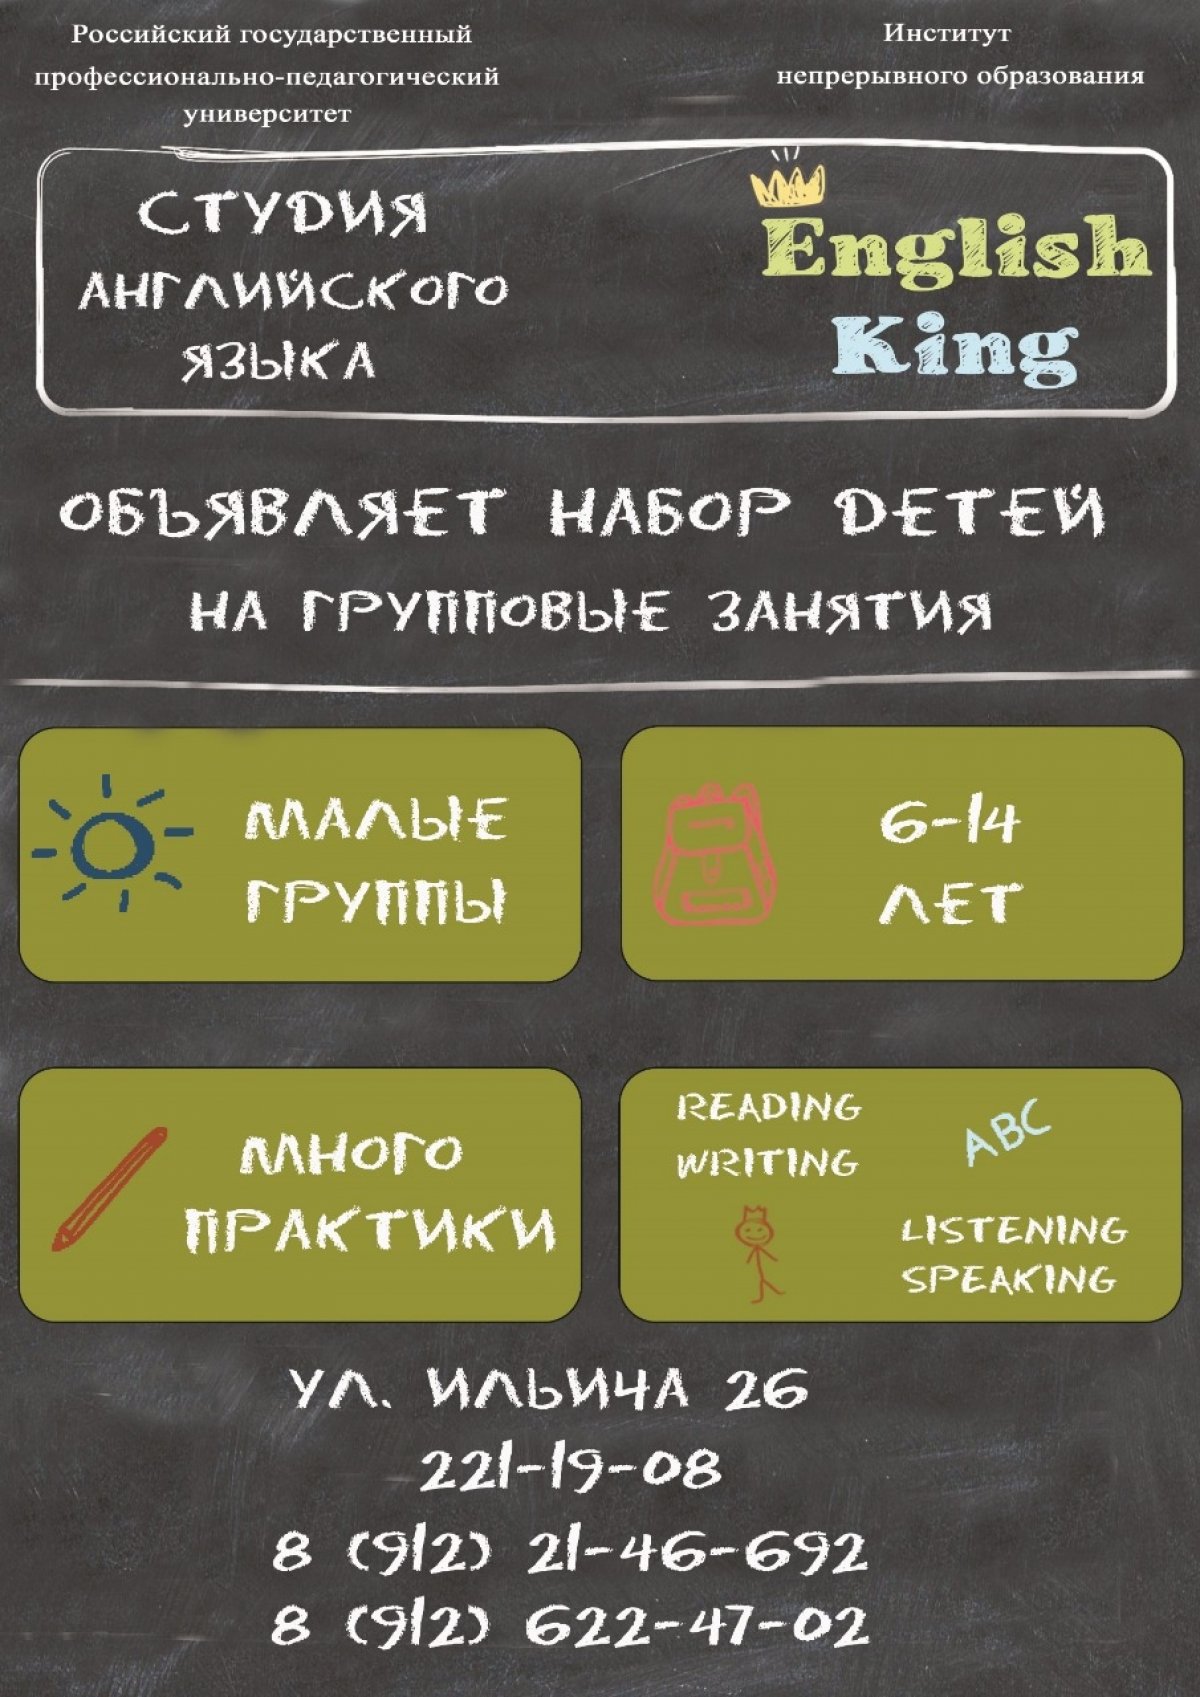 ❗ Студия английского языка "English King" объявляют набор до 15 сентября на дополнительную образовательную программу «Английский язык для детей»